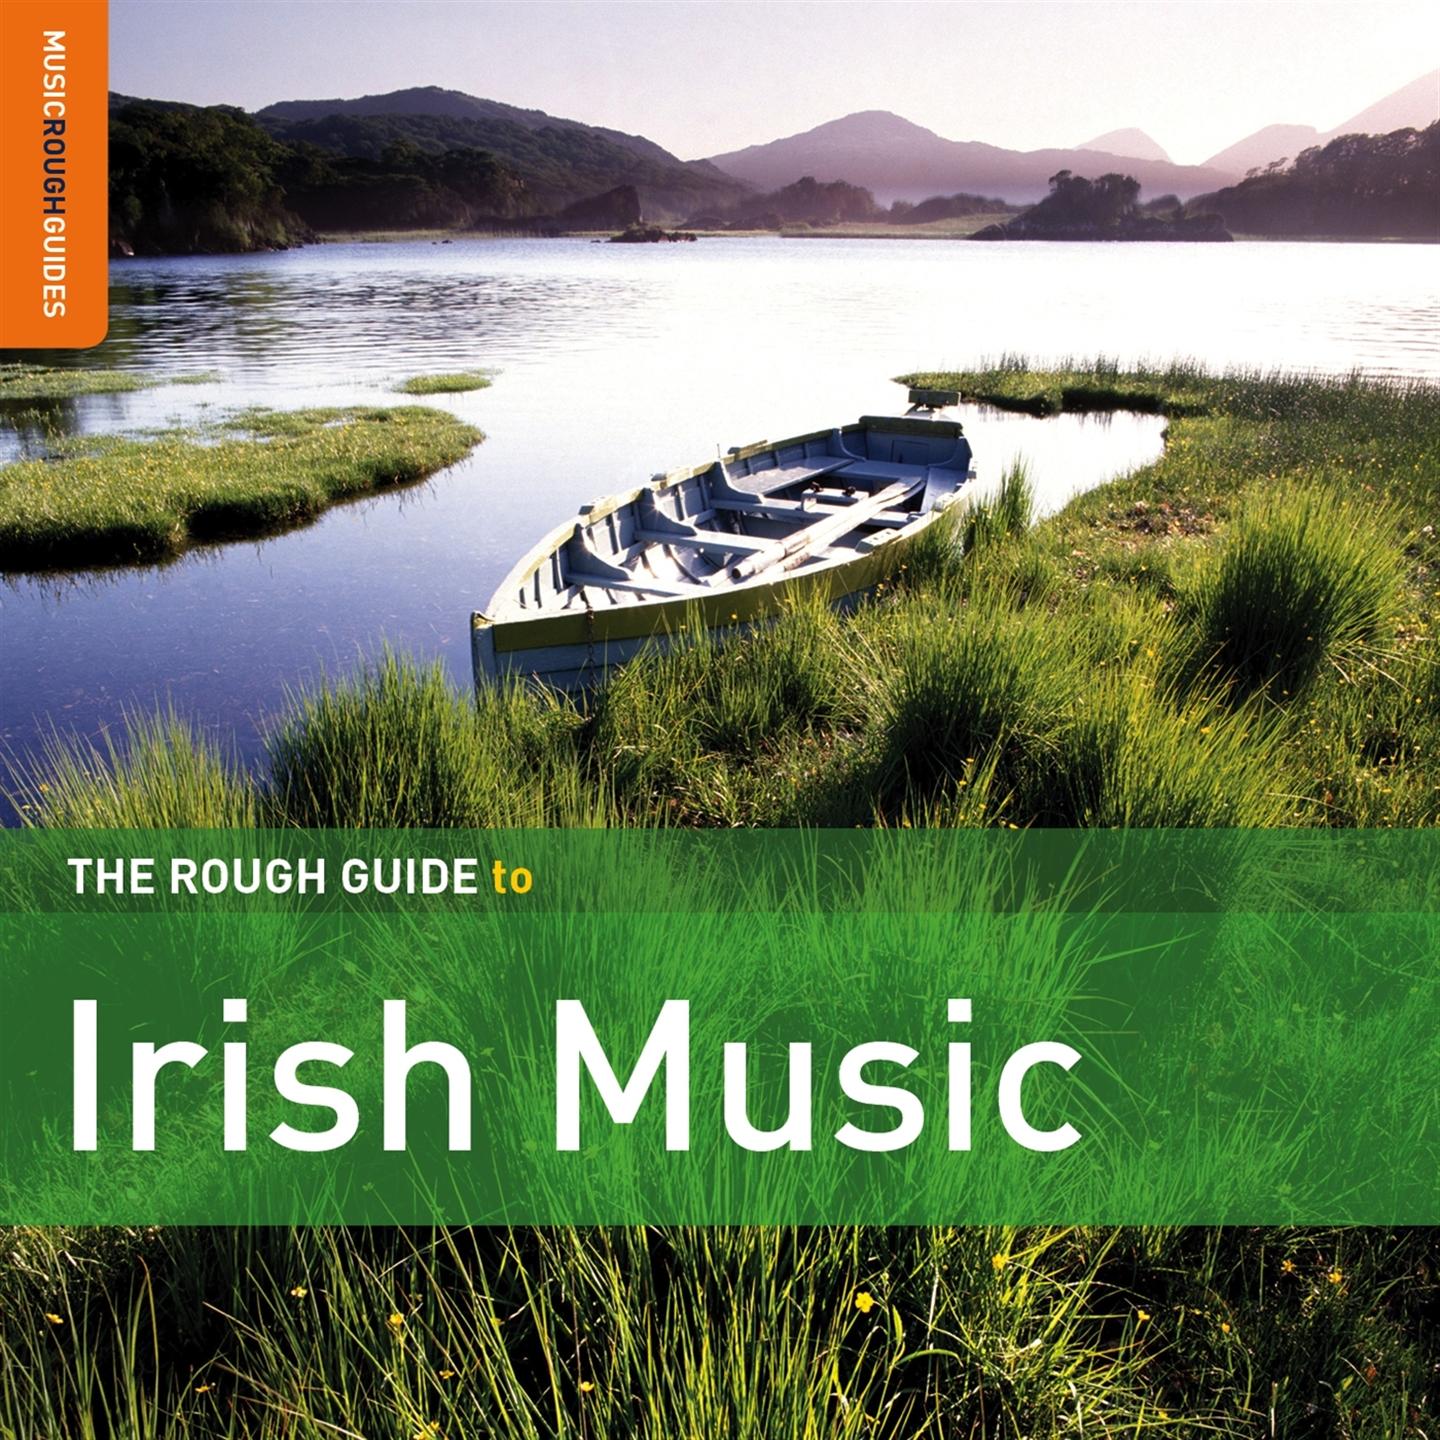 THE ROUGH GUIDE TO IRISH MUSIC